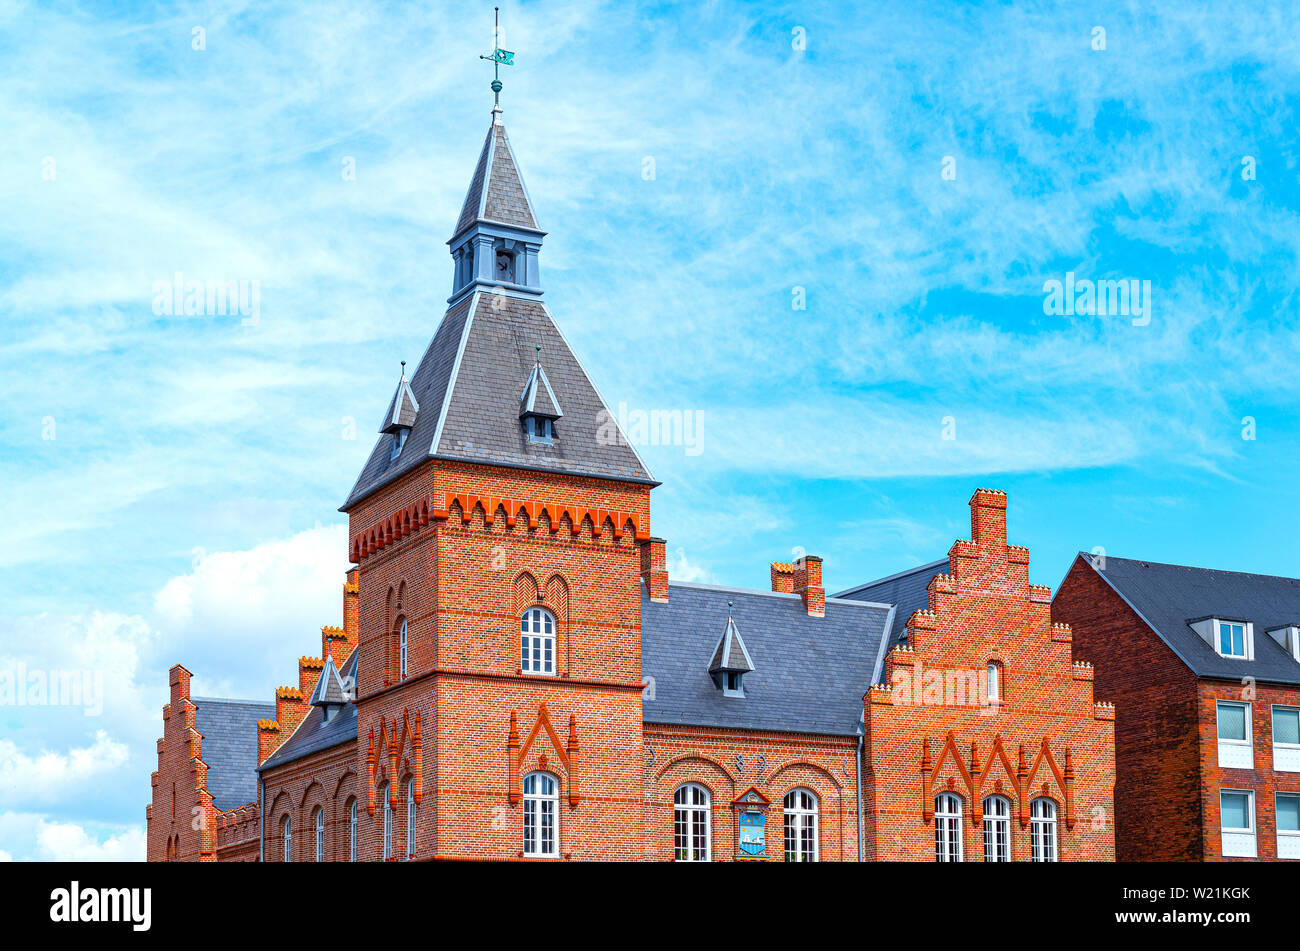 Denmark, Jutland peninsula, Esbjerg, Torvet square, the old Town Hall Stock Photo